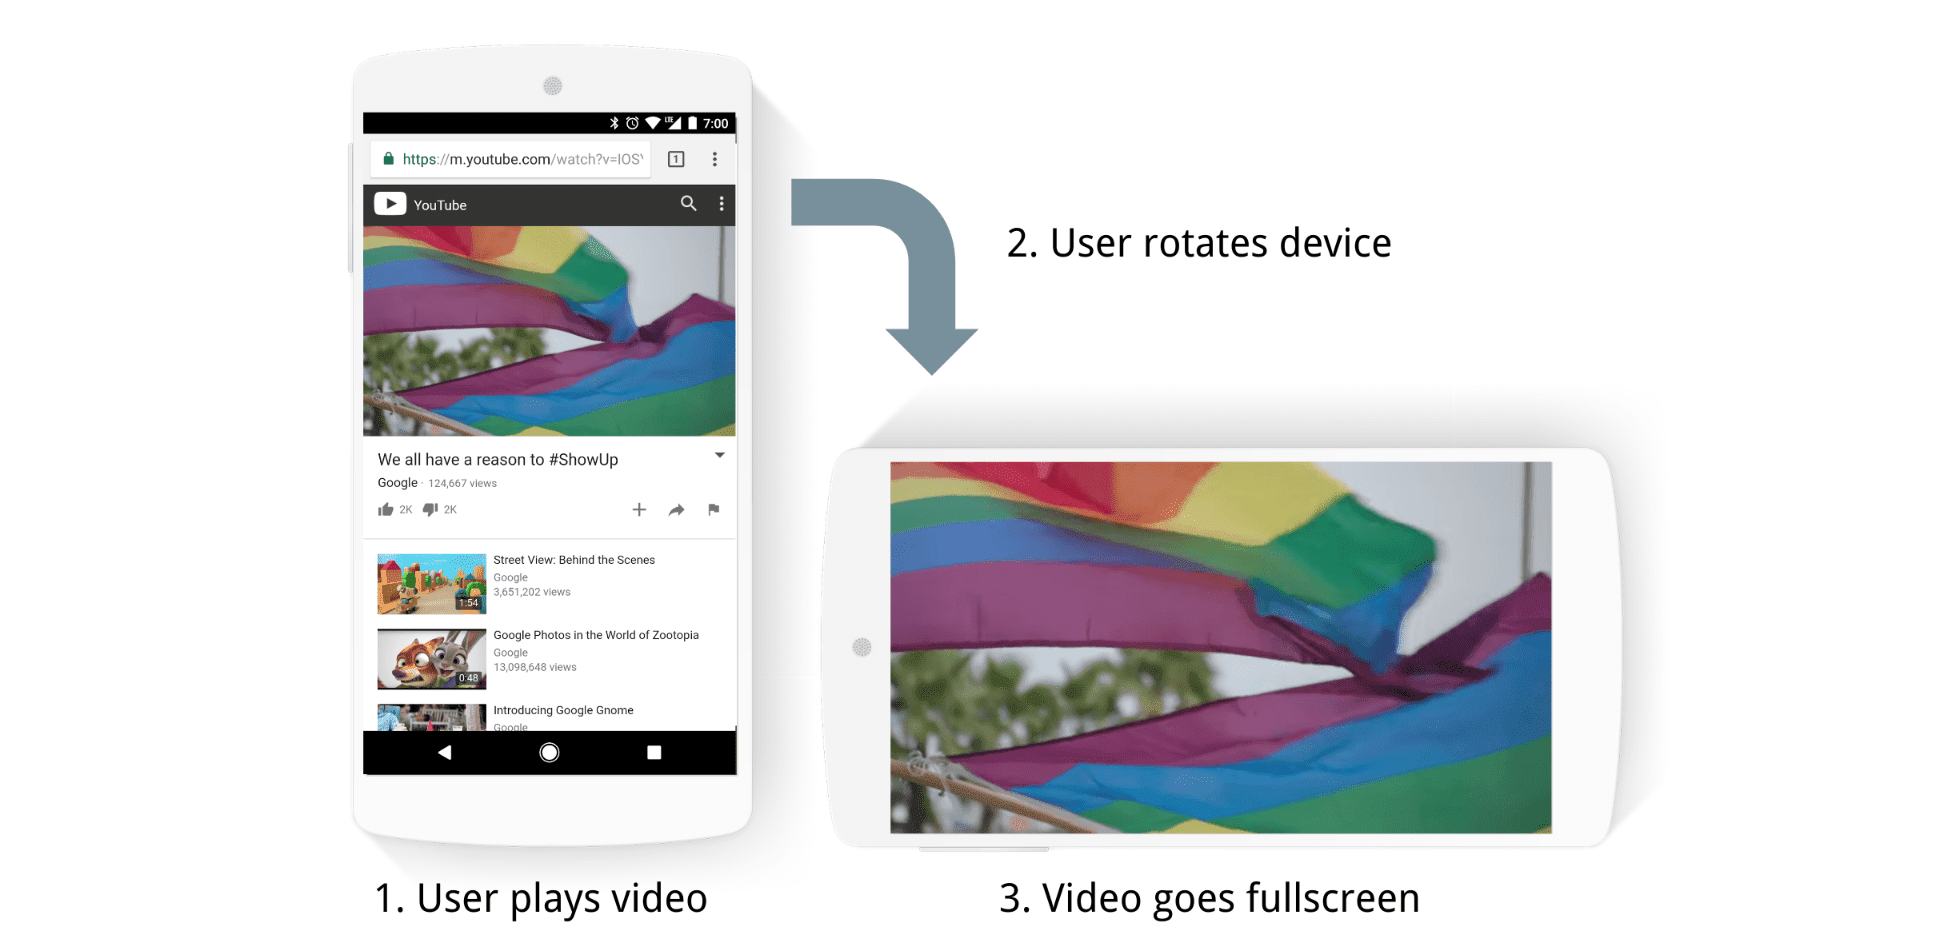 Tự động phát video ở chế độ toàn màn hình khi xoay thiết bị